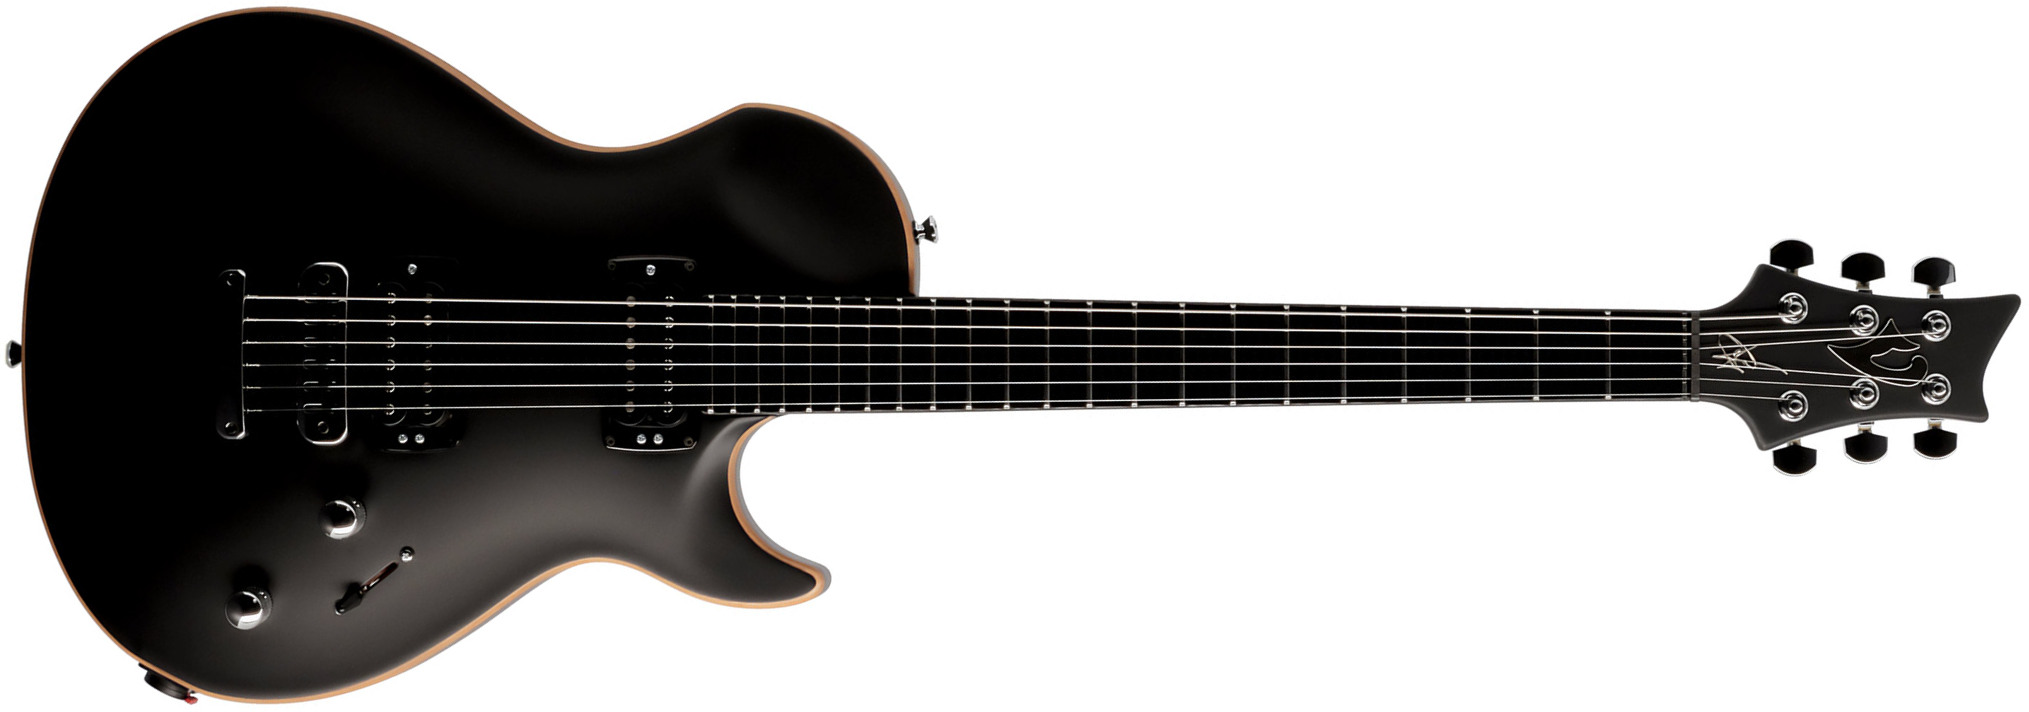 Vigier G.v. Rock 2h Ht Phe - Black Matte - Guitarra eléctrica de corte único. - Main picture